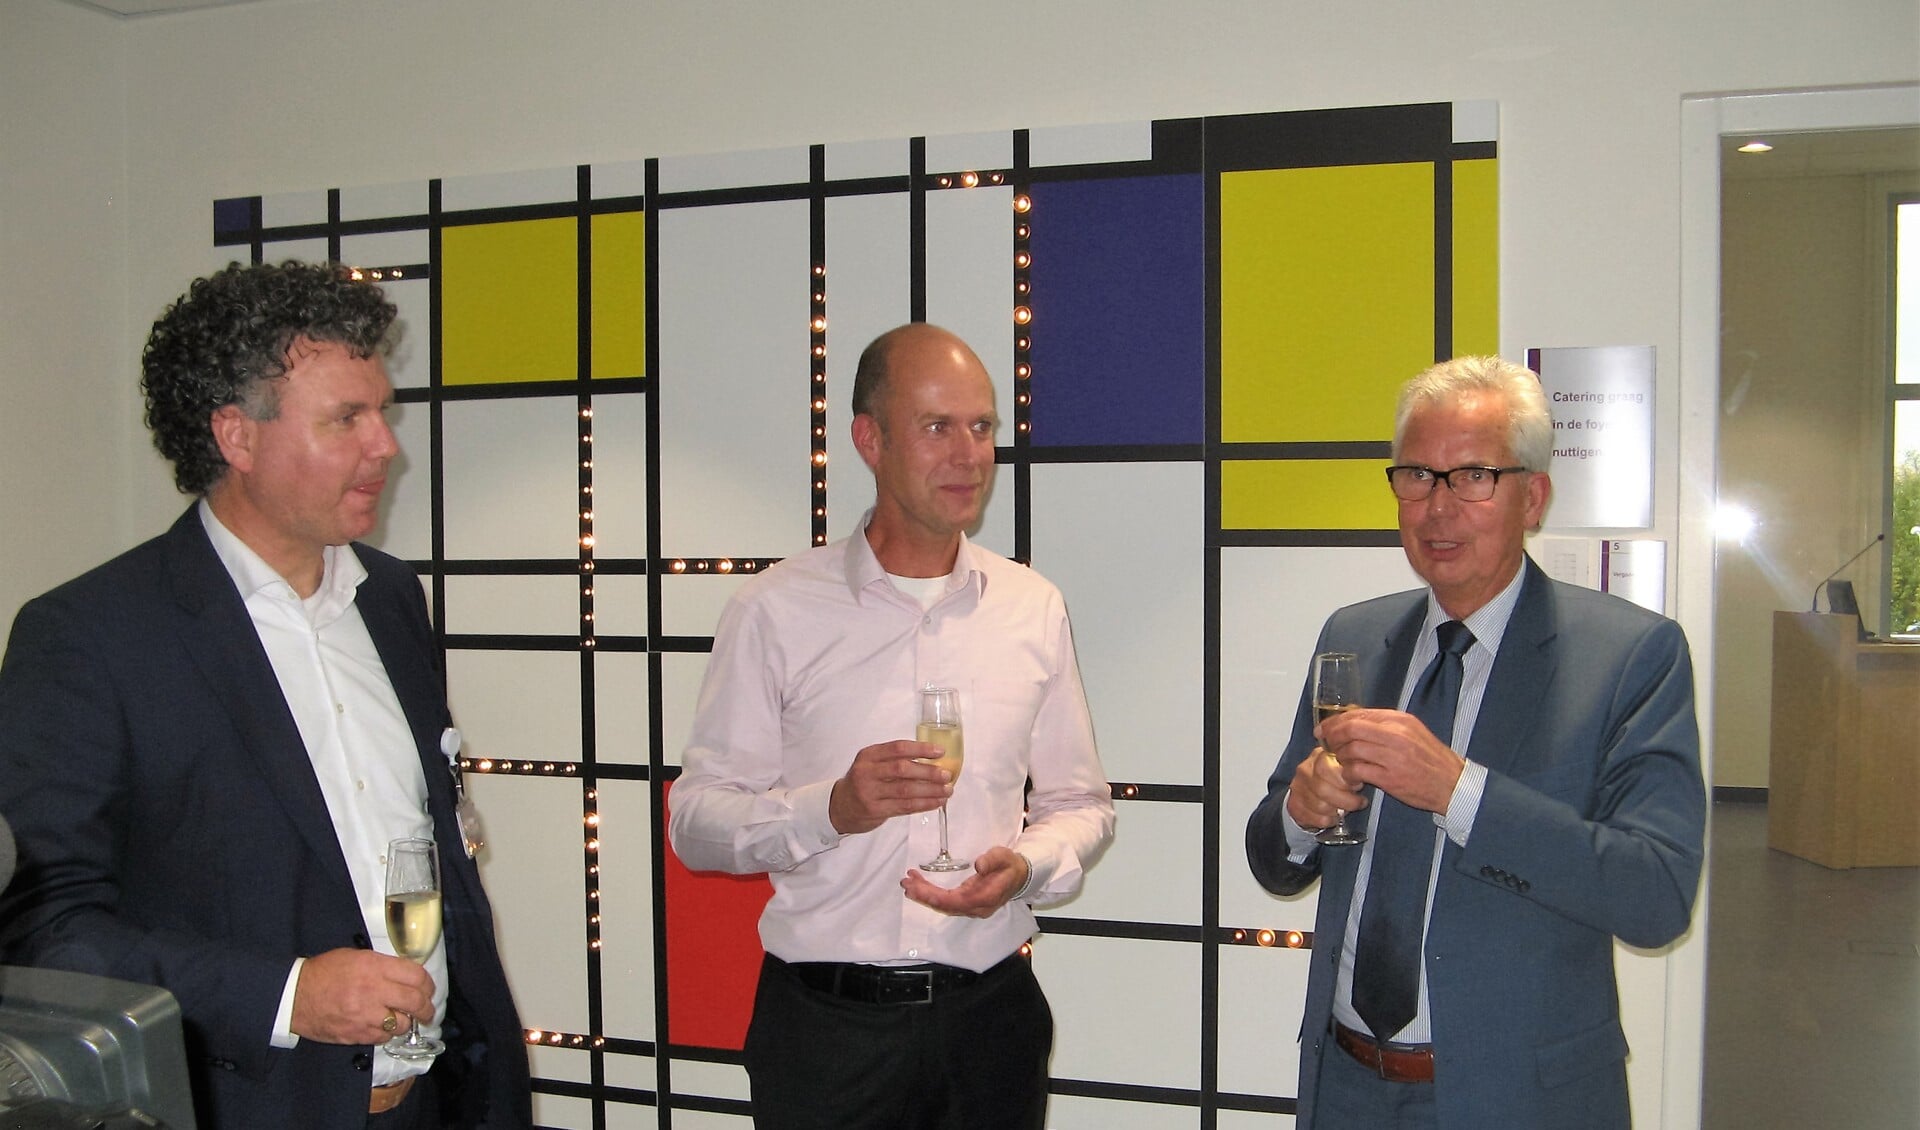 Bert Kleinlugtenbeld, Erwin Klijn (midden) en Thijs van Beem (rechts), voor de wandverlichting in Mondriaan-stijl. Foto: Bart Kraan